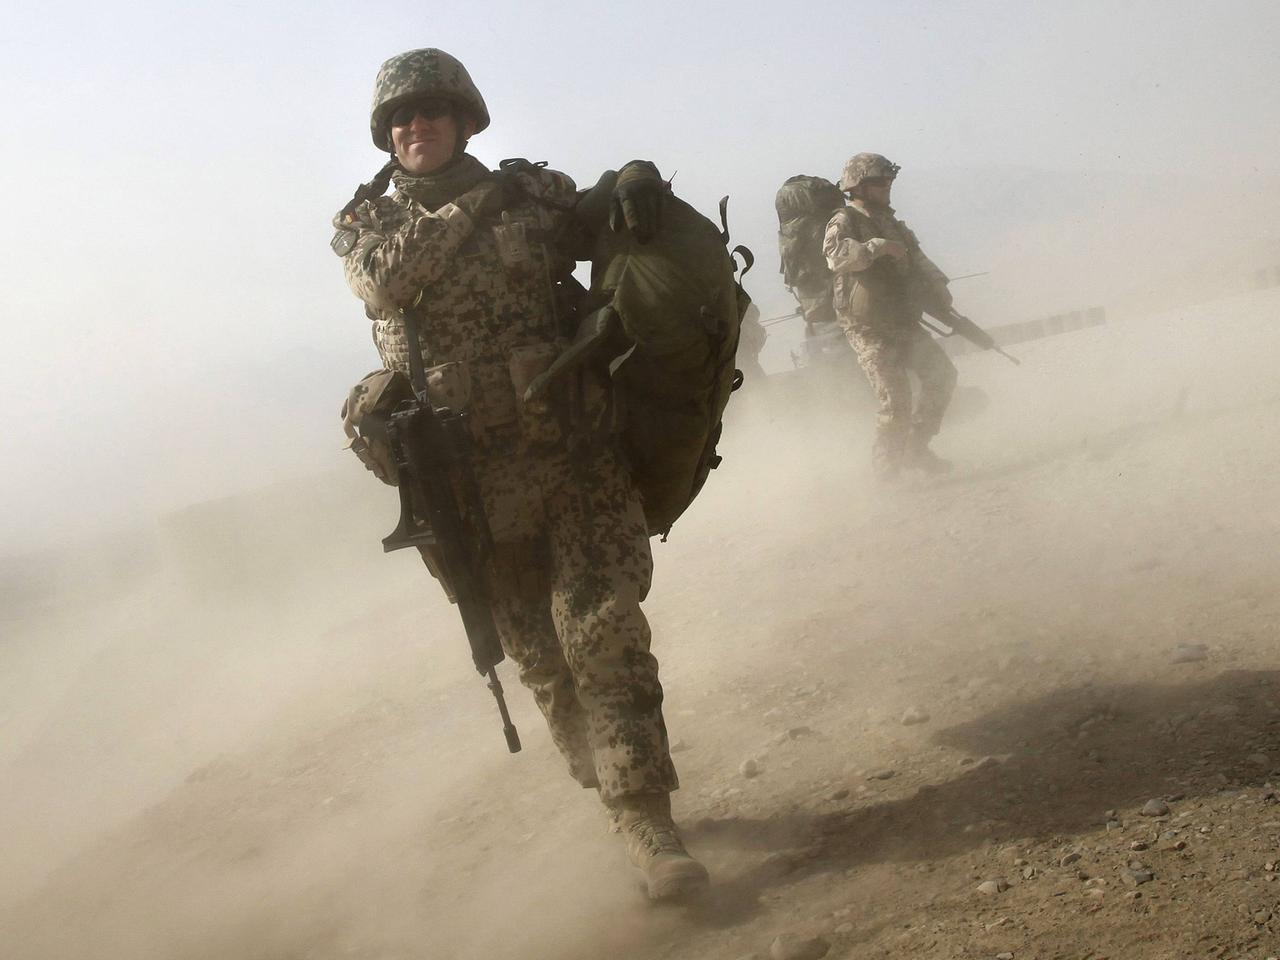 Bundeswehrsoldaten 2012 in Afghanistan